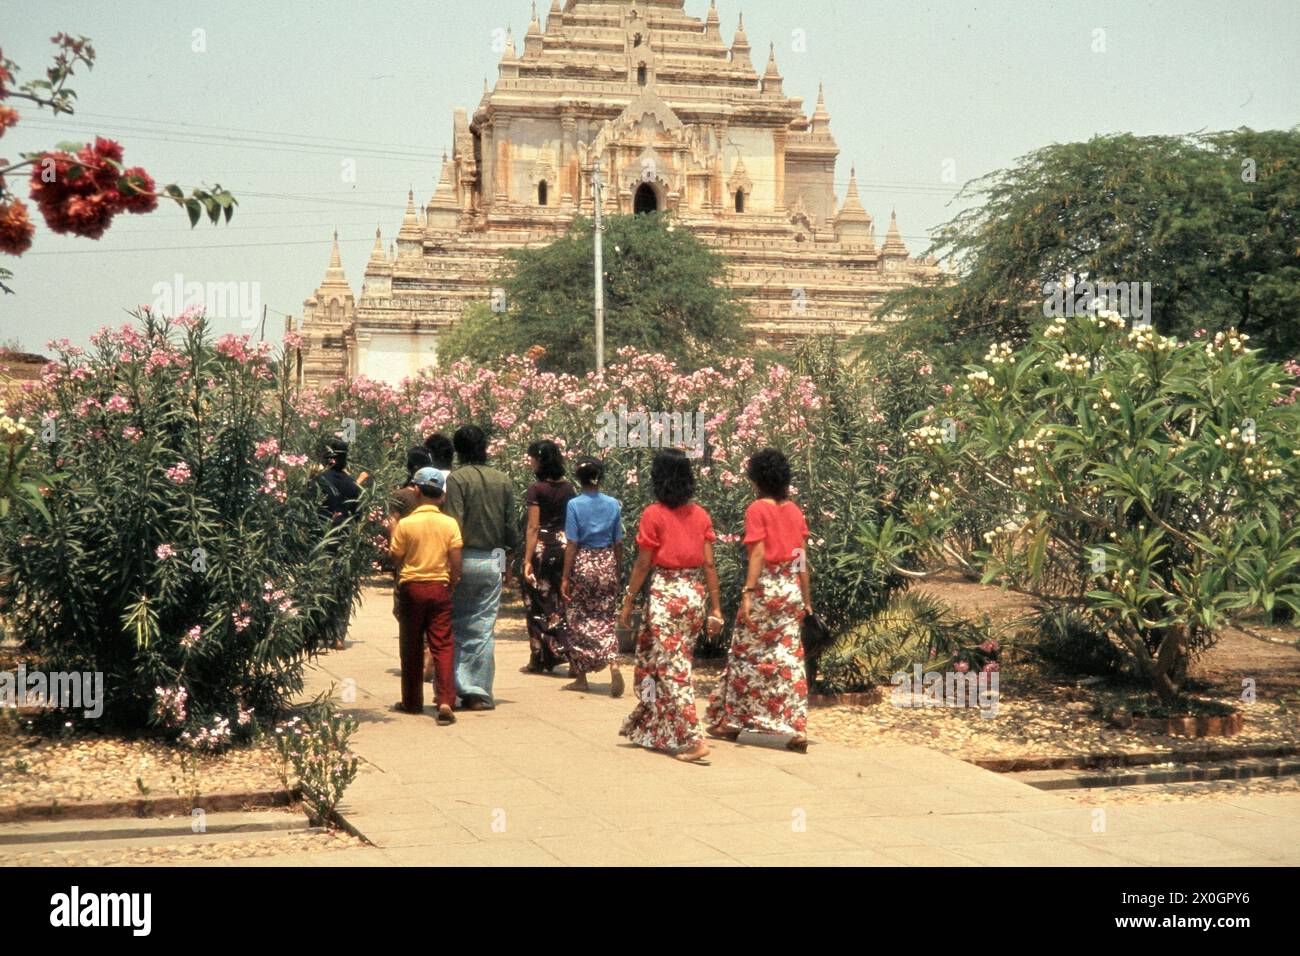 Eine burmesische Familie auf dem Weg durch einen Garten zum Gaw-Daw-Palin-Tempel in Bagan. Stock Photo